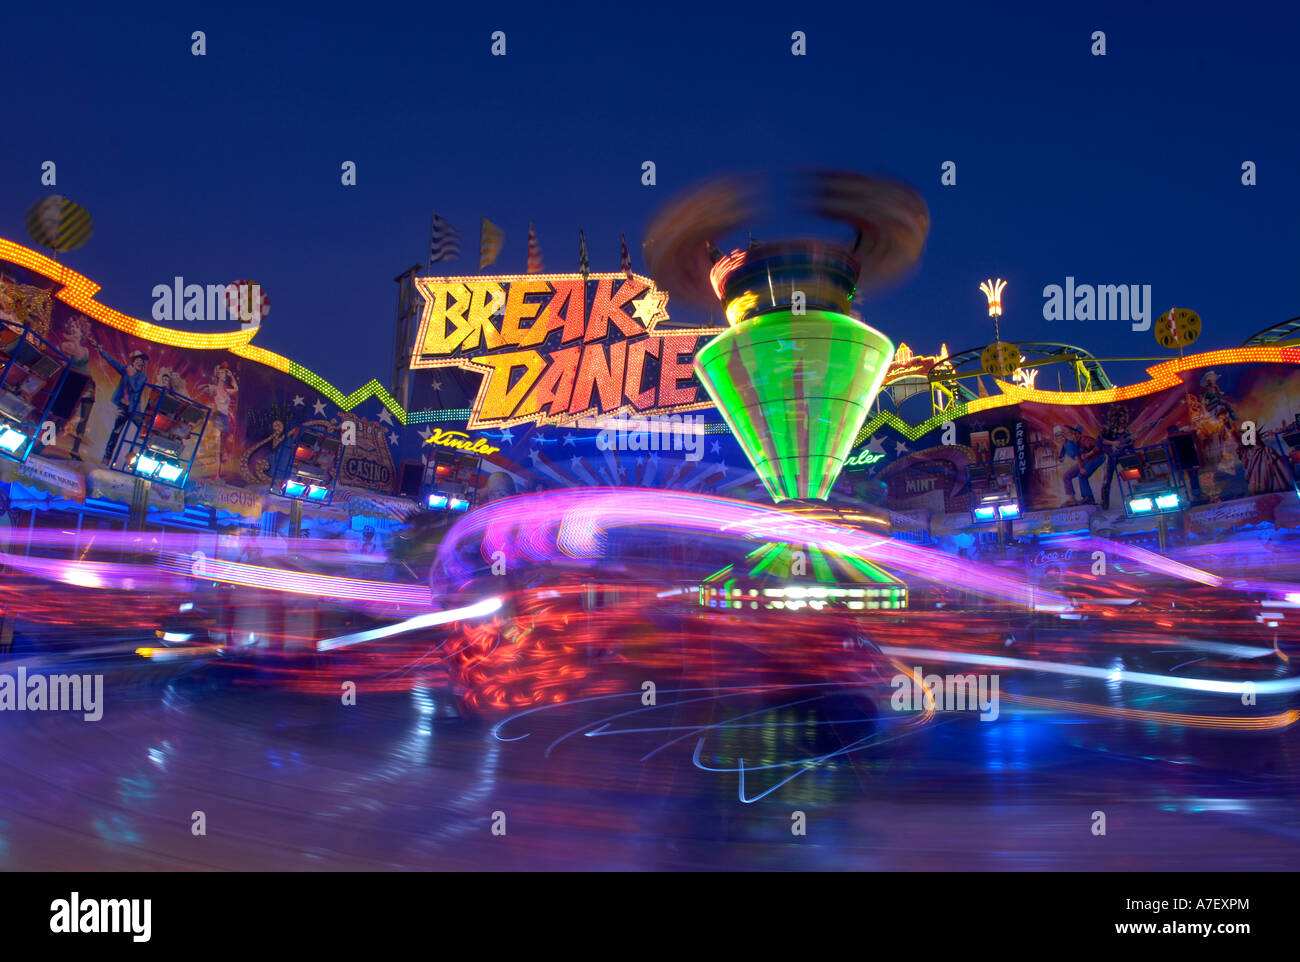 Breakdance fairground ride Stock Photo